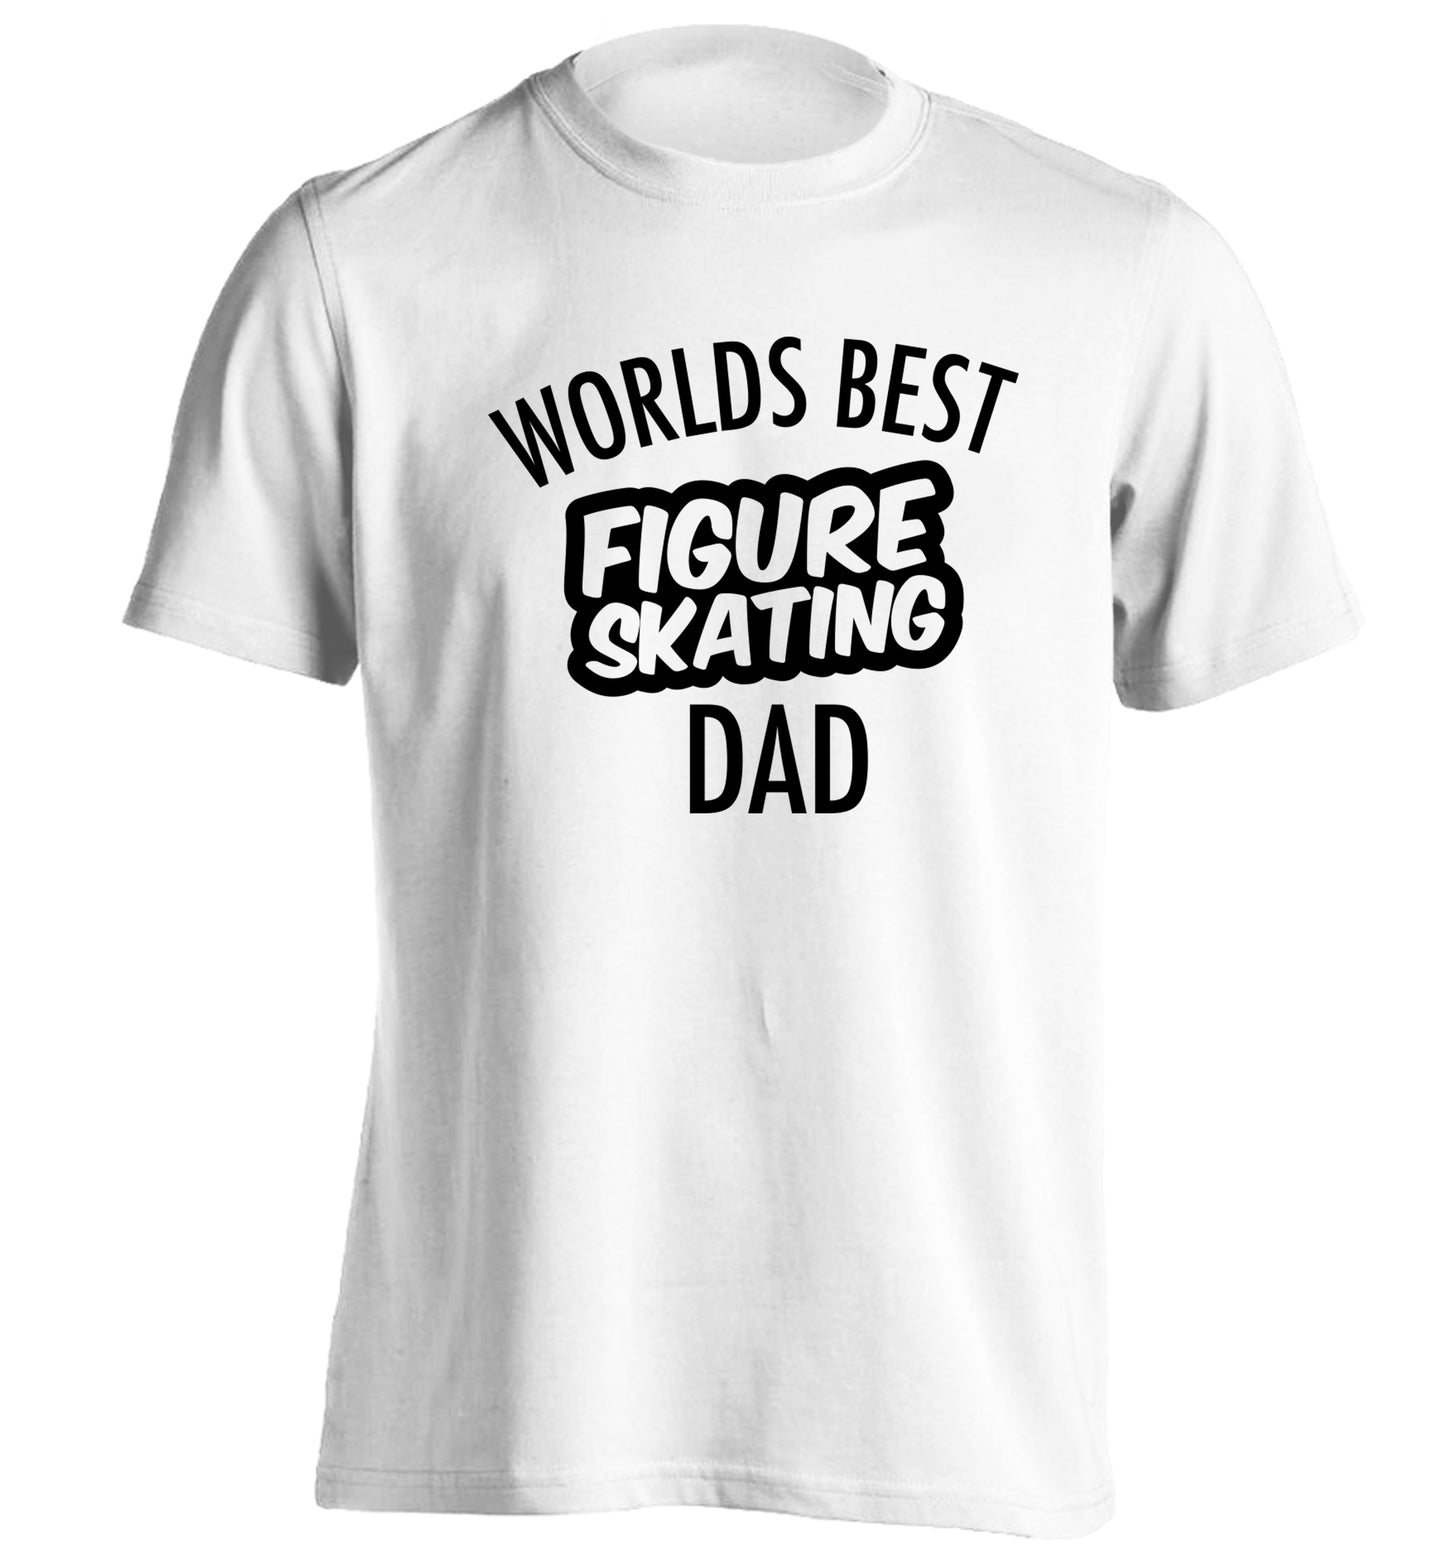 Worlds best figure skating dad adults unisexwhite Tshirt 2XL